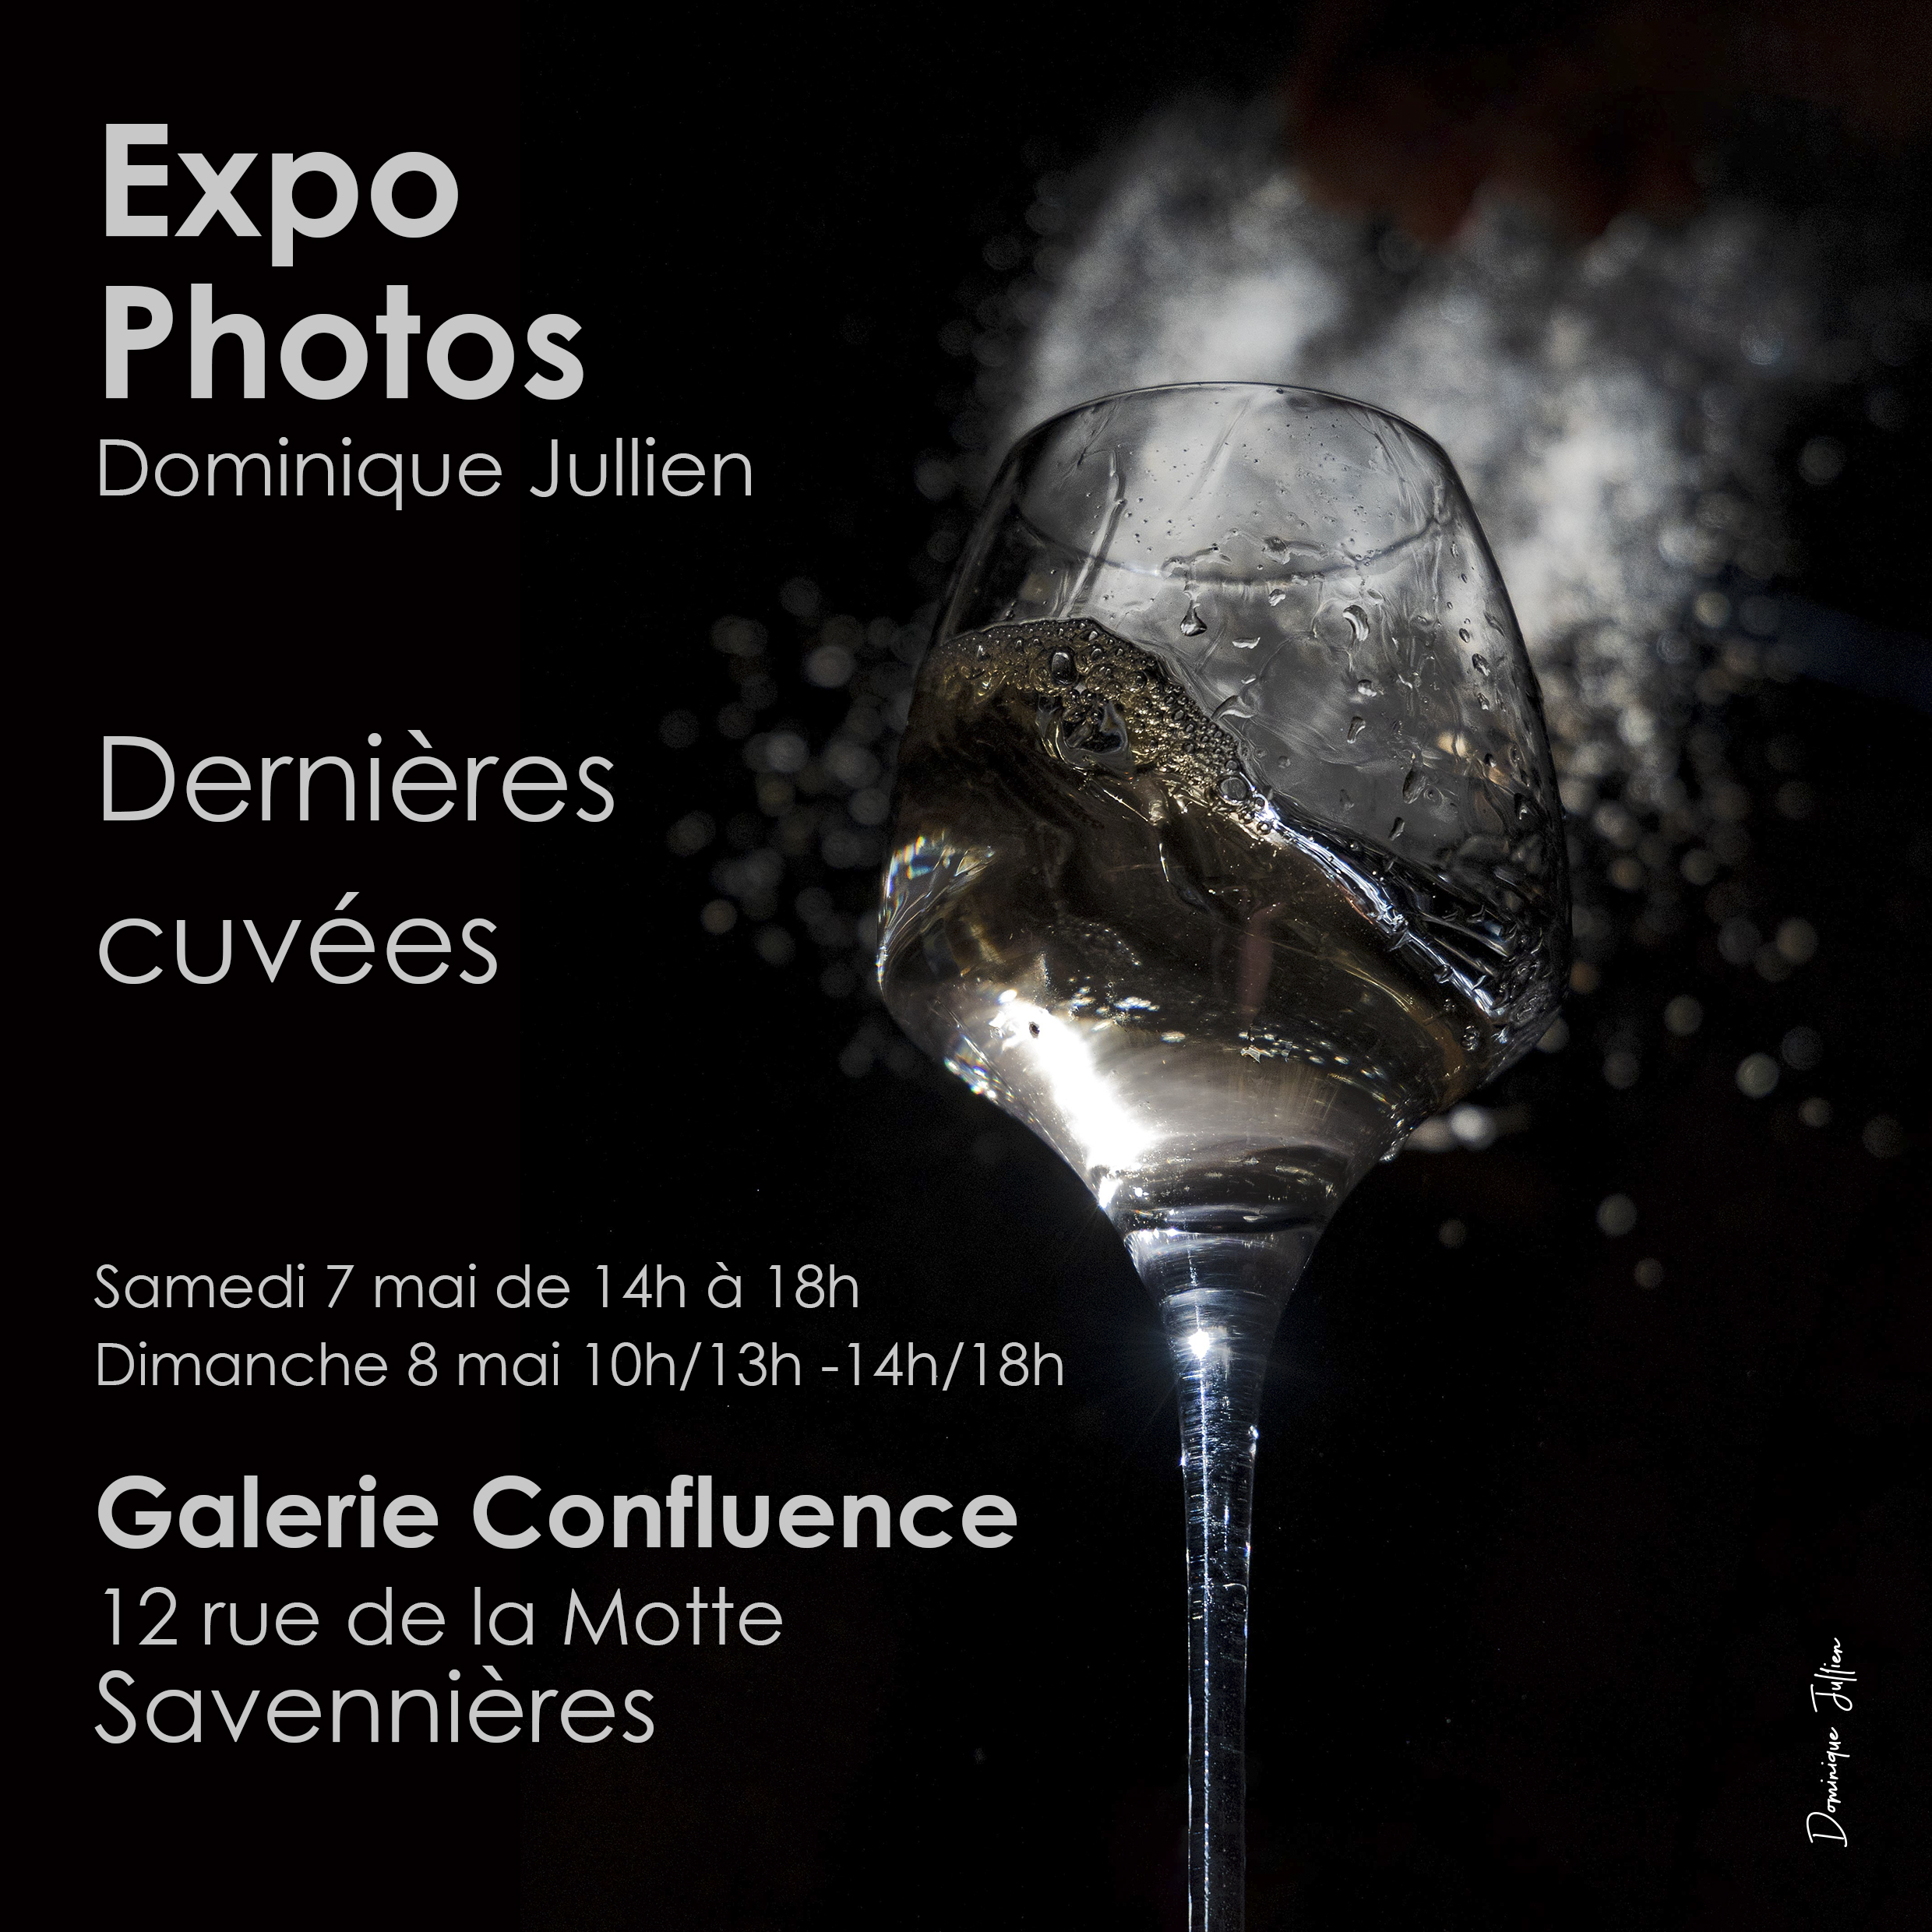 Expo Photos Dernières cuvées